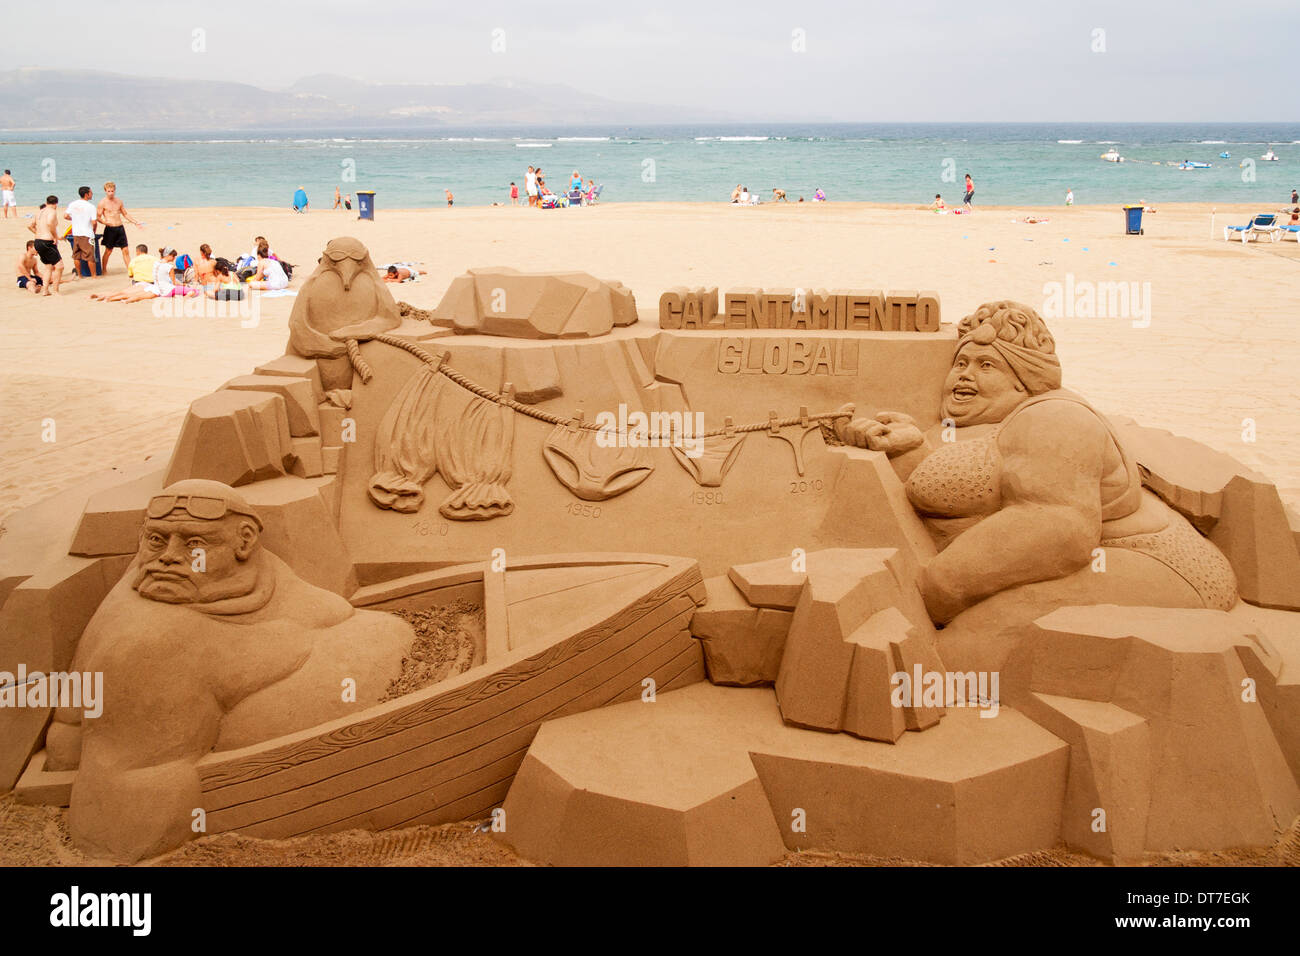 Funny sand sculpture immagini e fotografie stock ad alta risoluzione - Alamy